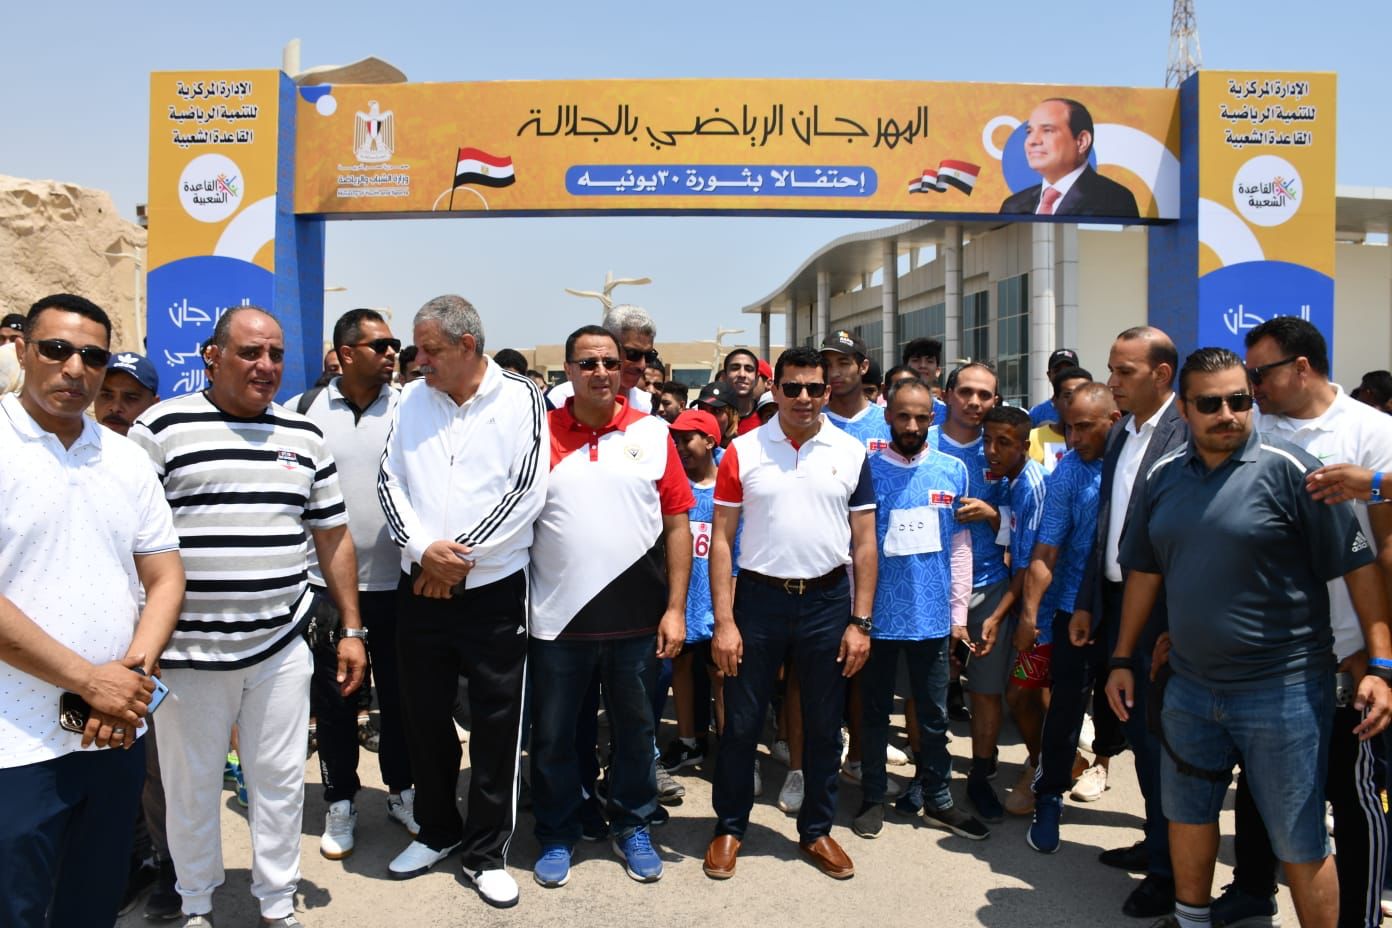 وزير الرياضة يطلق فعاليات النسخة الثانية من مهرجان الجلالة (3)